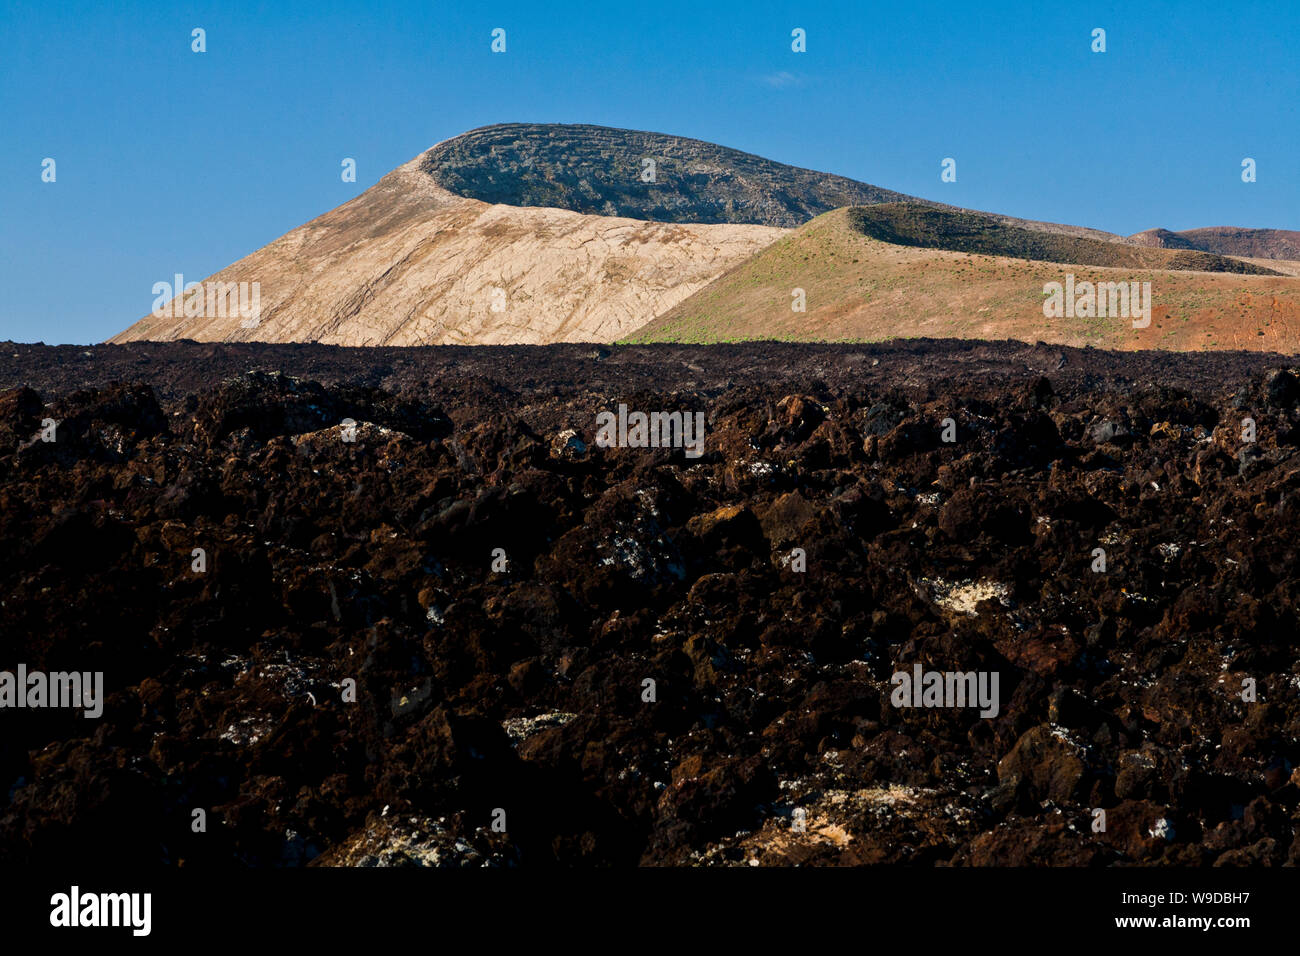 Montaña Blanca and Montaña Caldereta amongst the lavaflows in Lanzarote, Canary Islands, Spain Stock Photo